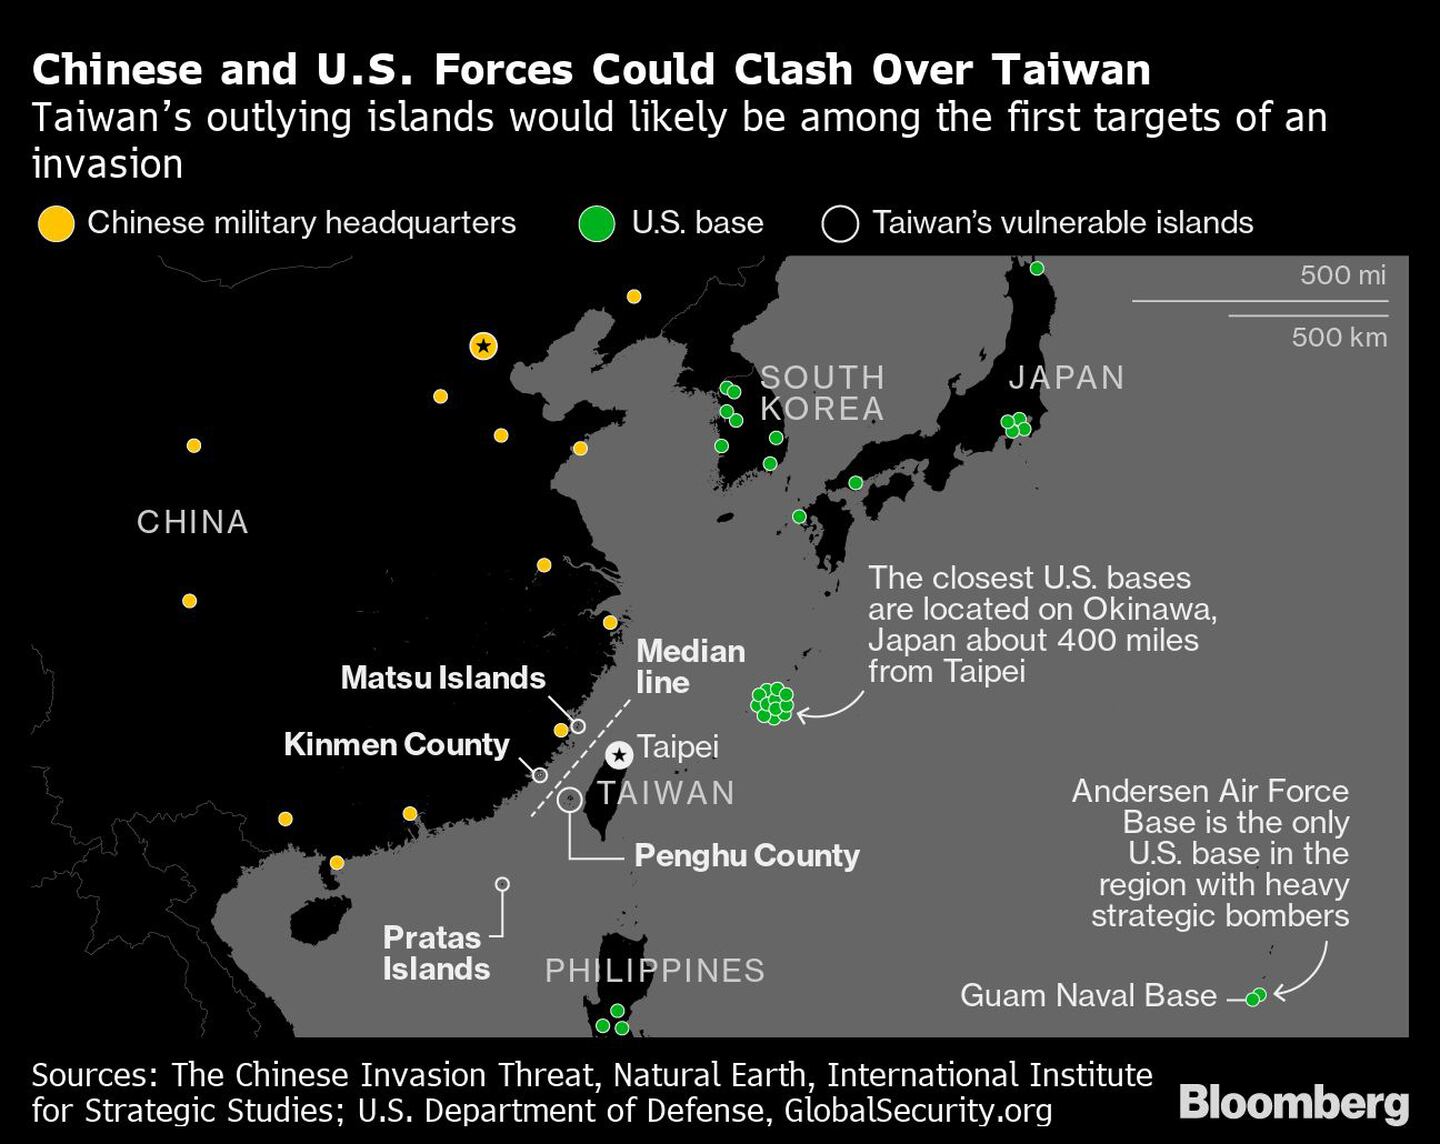 Las fuerzas chinas y estadounidenses podrían enfrentarse por Taiwán
Las islas periféricas de Taiwán serían probablemente uno de los primeros objetivos de una invasión
Amarillo: Cuartel general del ejército chino
Verde: Base de EE.UU.
Círculos blancos: Islas vulnerables de Taiwándfd